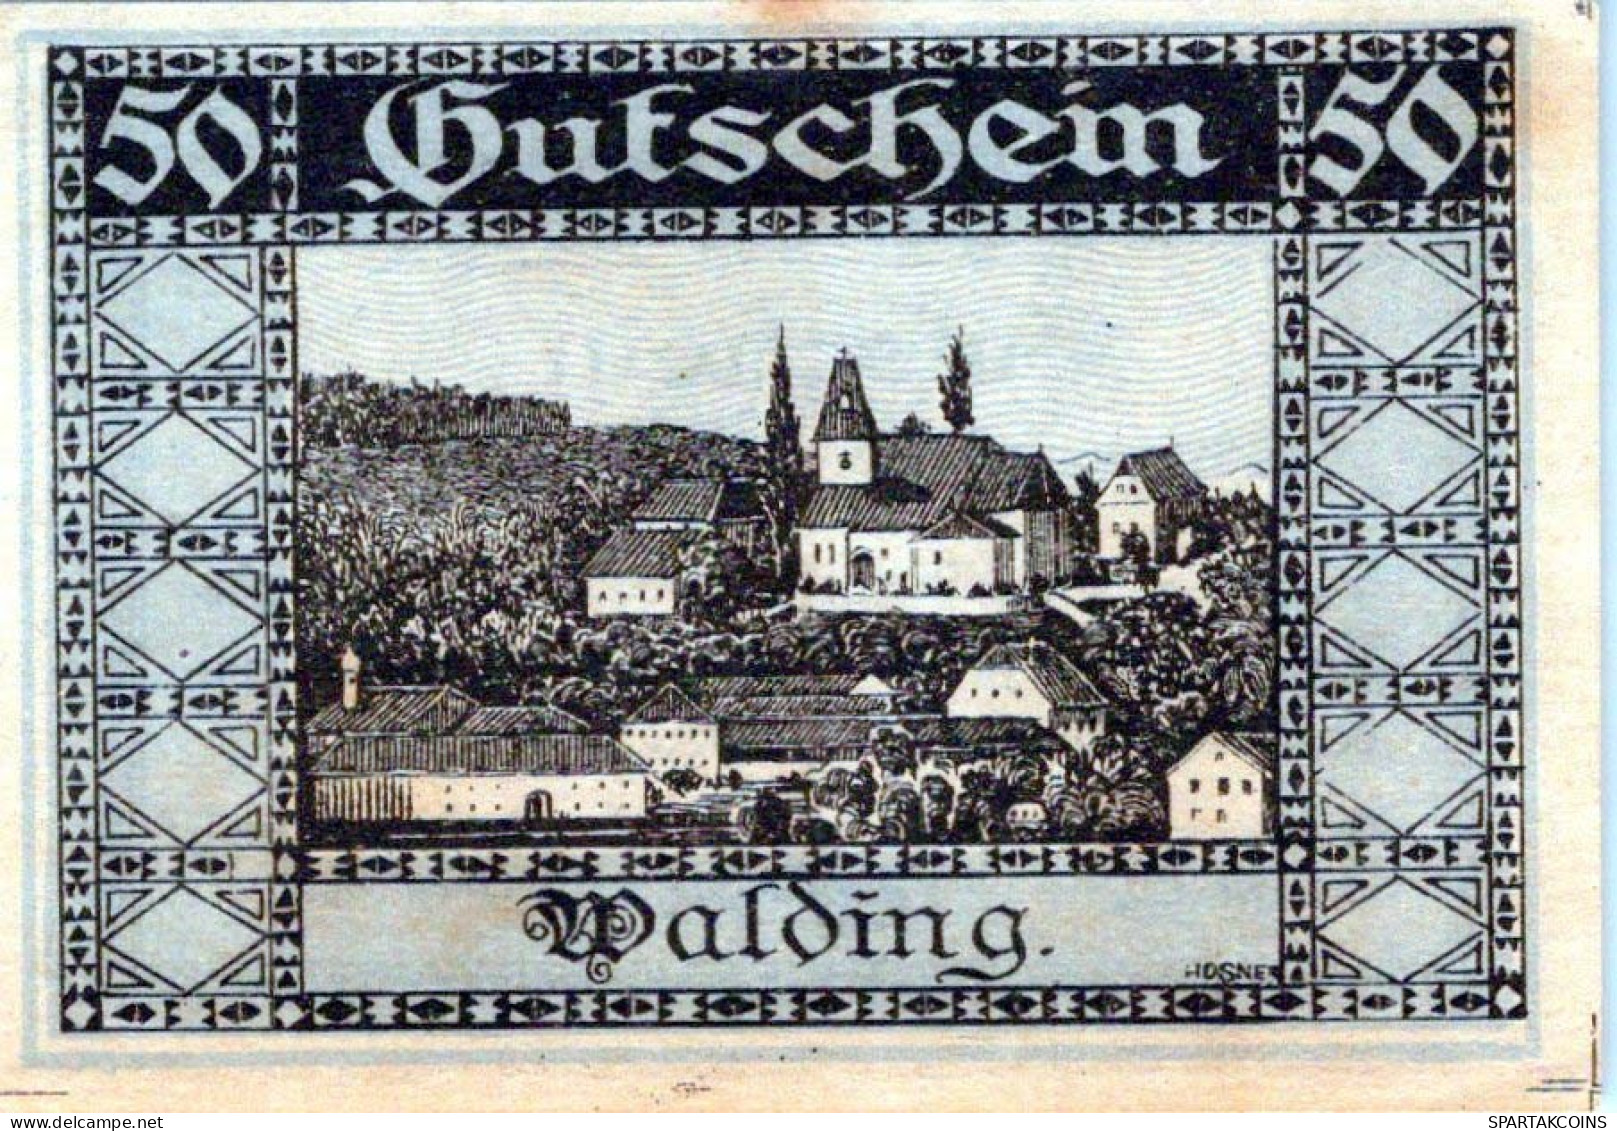 50 HELLER 1920 Stadt WALDING Oberösterreich Österreich Notgeld Banknote #PI410 - [11] Lokale Uitgaven